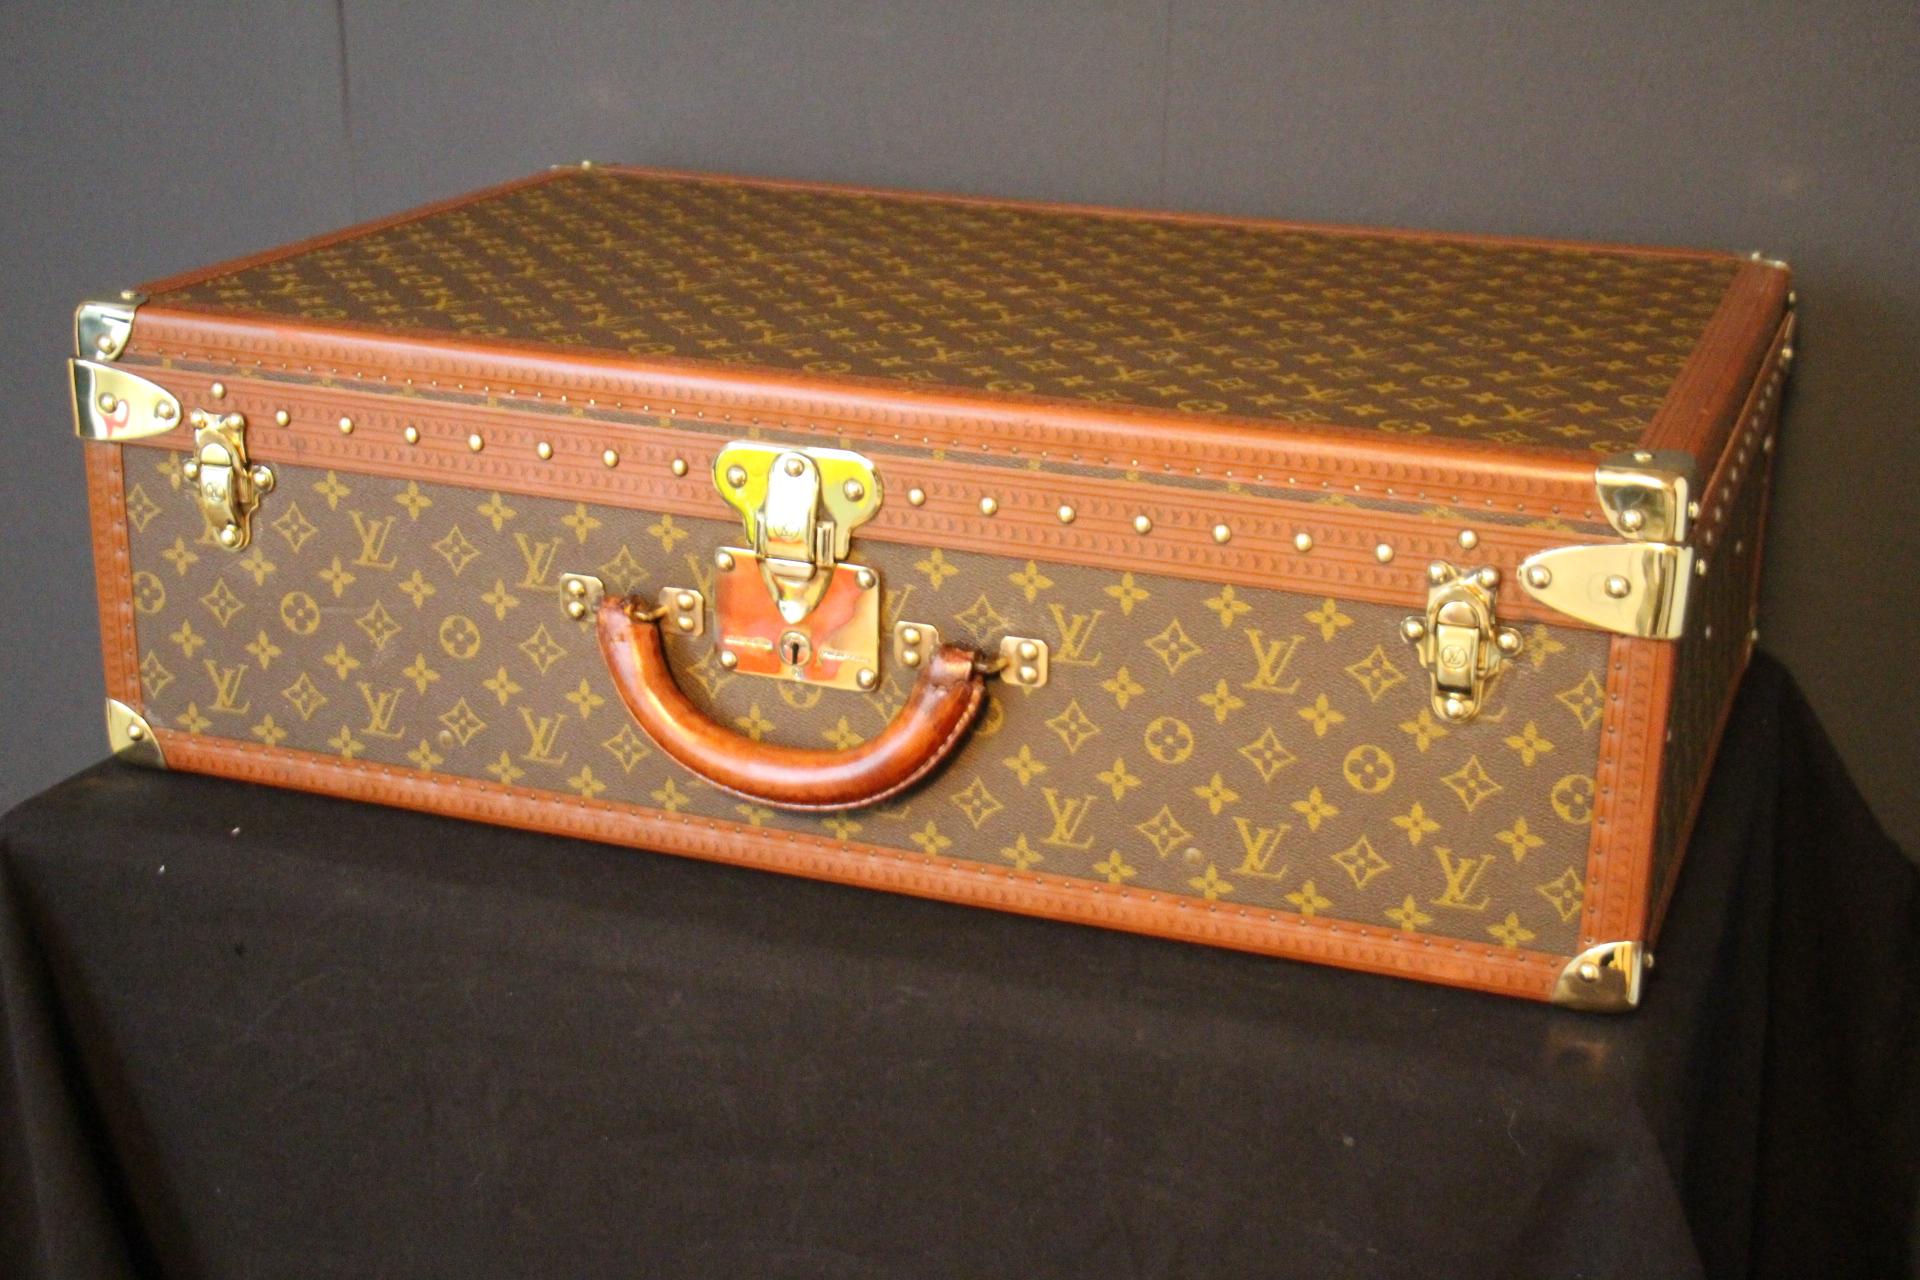 Ce bagage est une magnifique valise Louis Vuitton Alzer monogramme. Cette valise de 70 cm est presque la plus grande et certainement la plus luxueuse des valises Louis Vuitton. Il est doté de tous les accessoires en laiton massif estampillés Louis